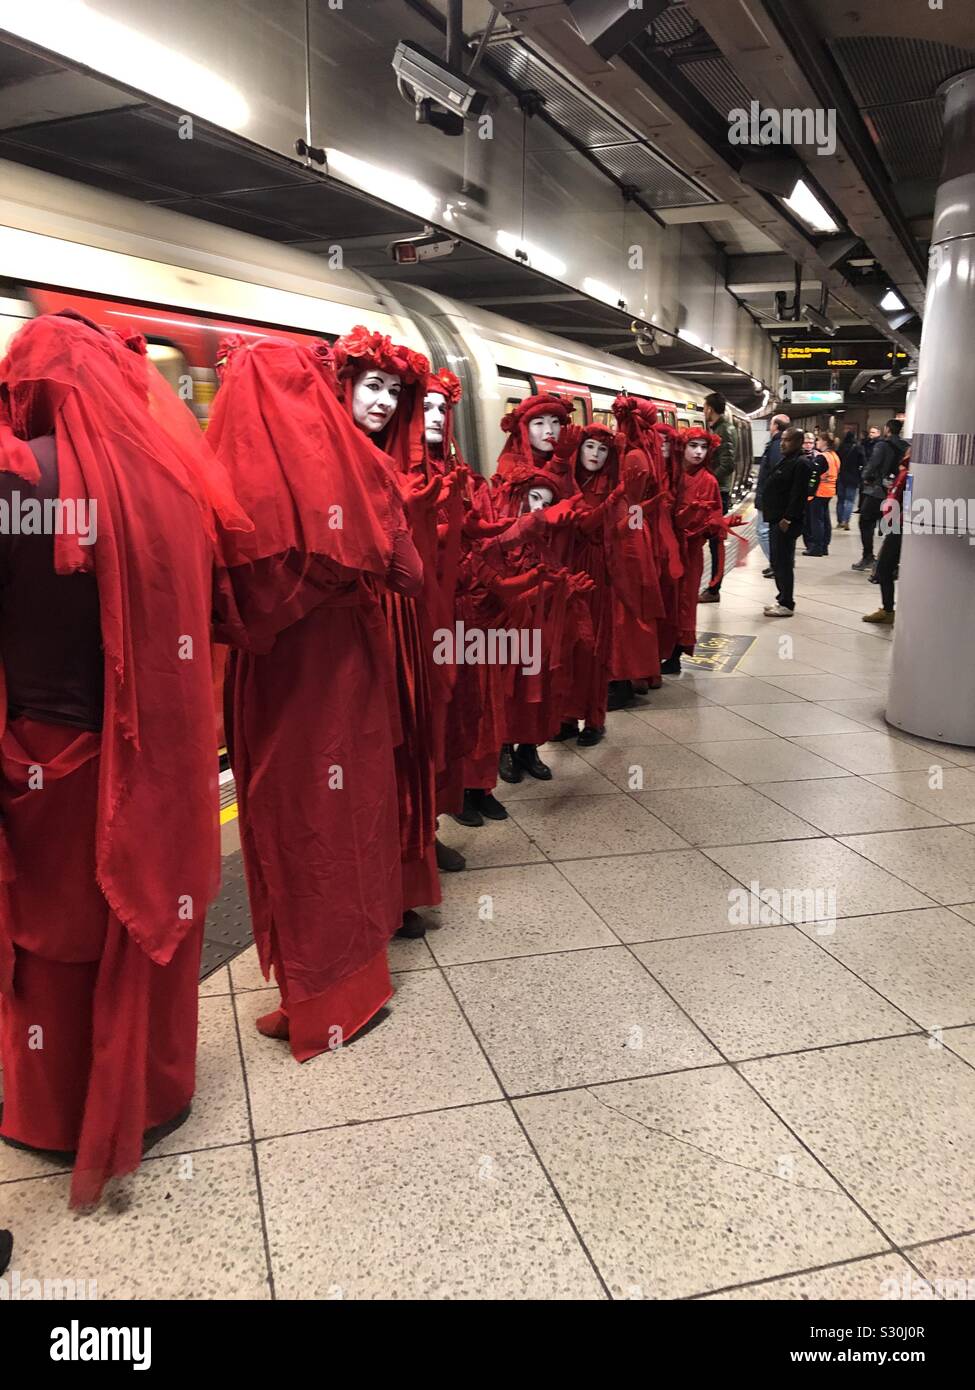 La Brigade rouge de l'extinction de rébellion sur une station de métro Banque D'Images